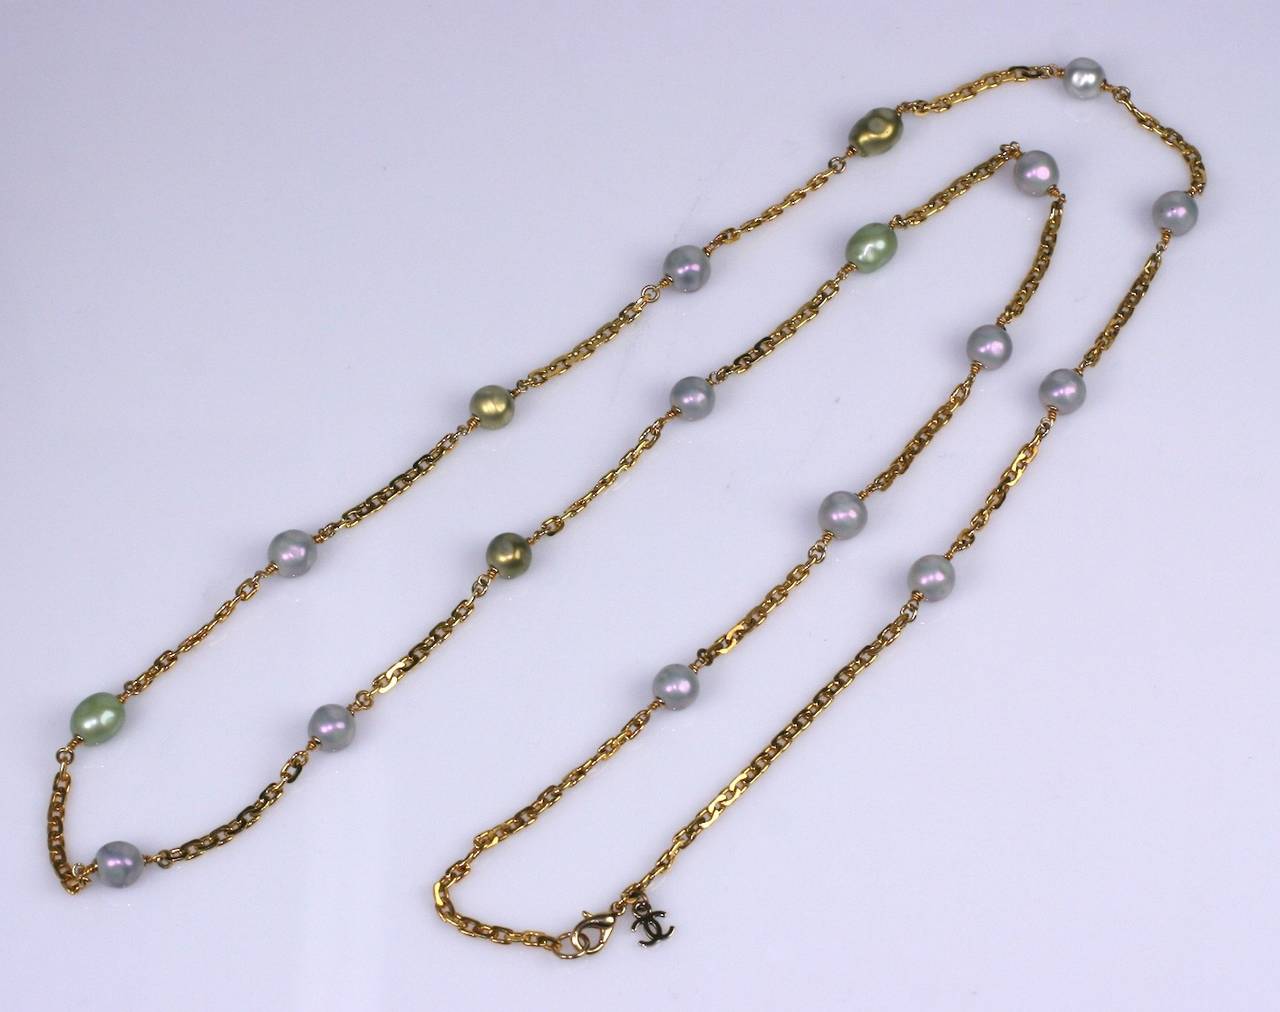 Chanel Sautoir mit fliederfarbenen und zeladonfarbenen Perlen, handgefertigt von Maison Gripoix. 
Handgefertigte lilafarbene und keladonfarbene Kunstperlen sind von Hand auf die vergoldete Bronzekette gewickelt. Schließt mit Karabinerverschluss und